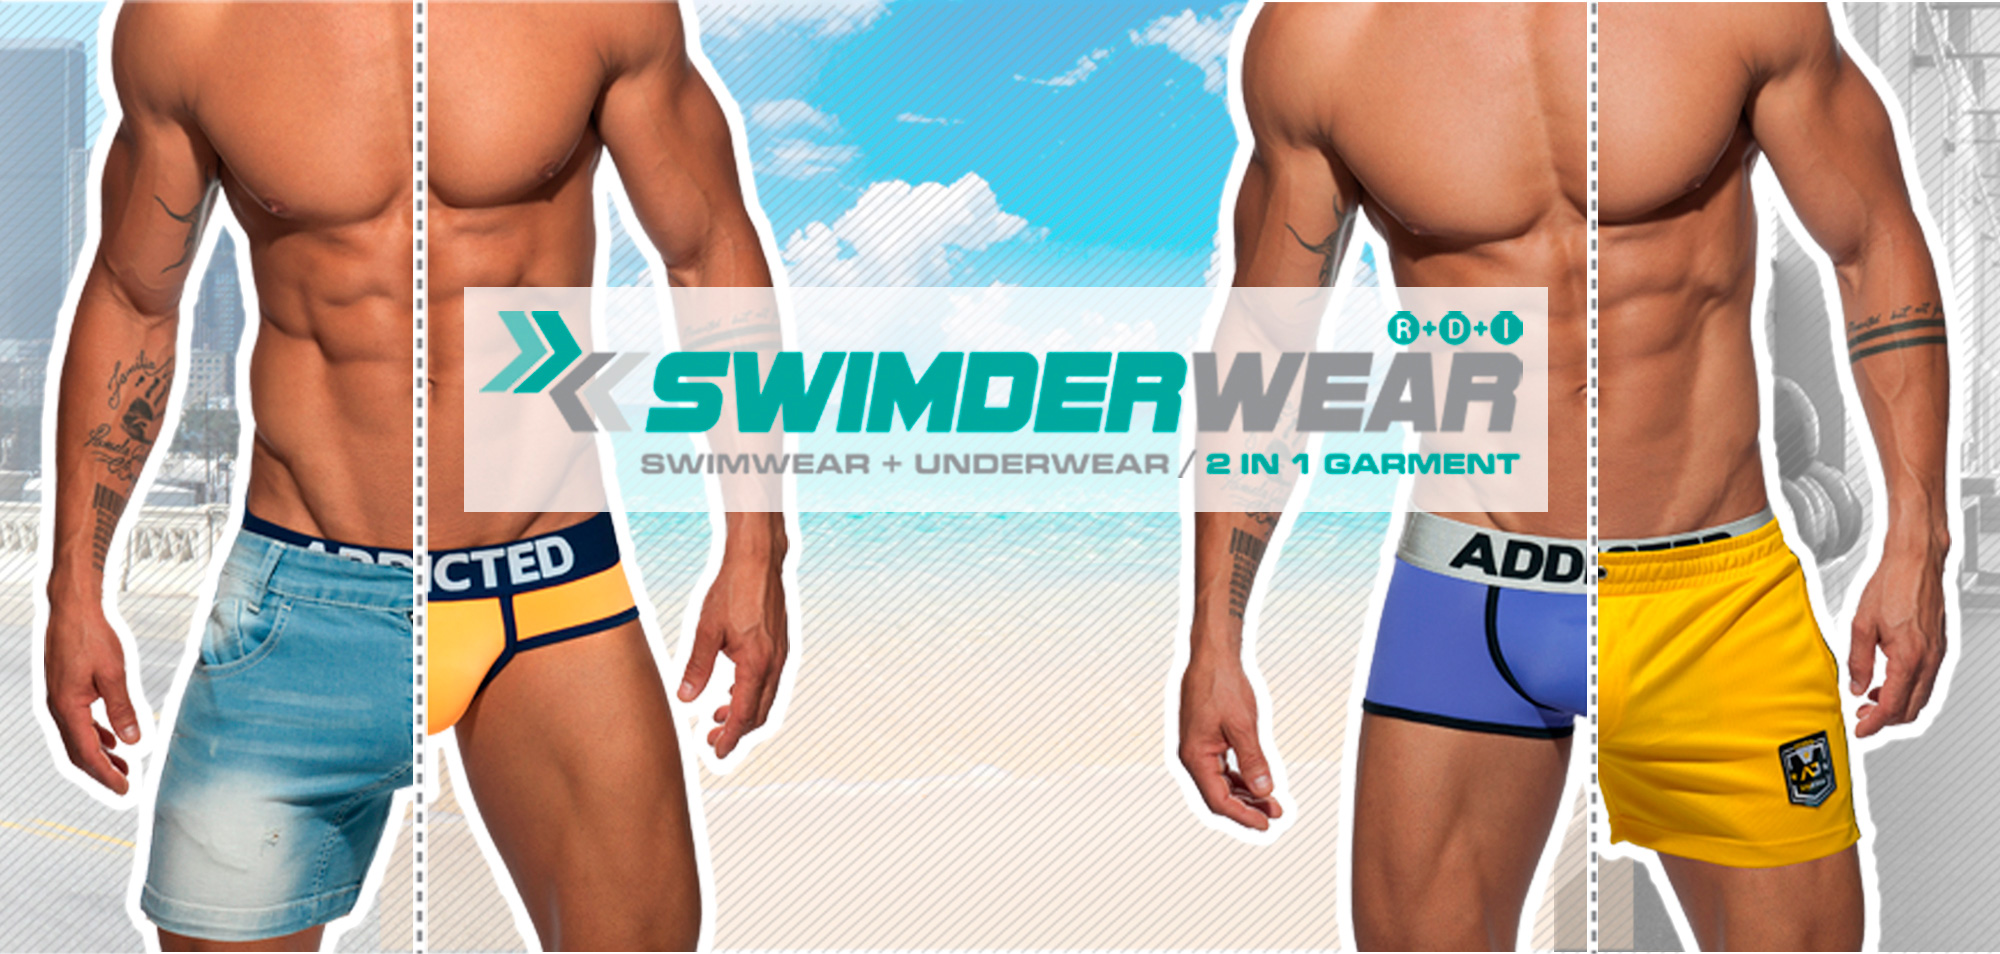 Swimderwear